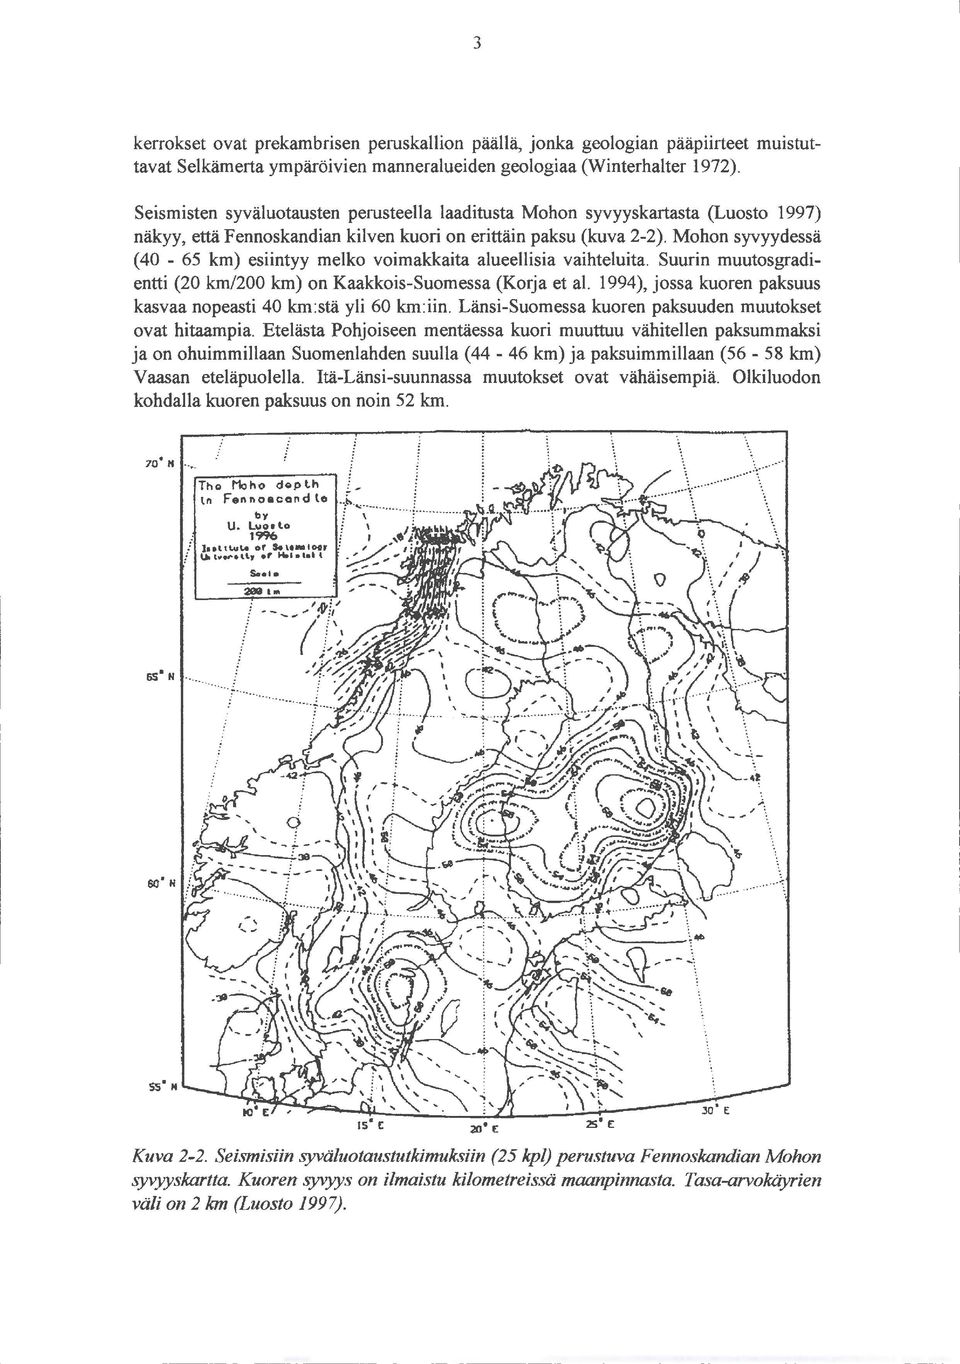 Mohon syvyydessä (40-65 km) esiintyy melko voimakkaita alueellisia vaihteluita. Suurin muutosgradientti (20 km/200 km) on Kaakkois-Suomessa (Korja et al.